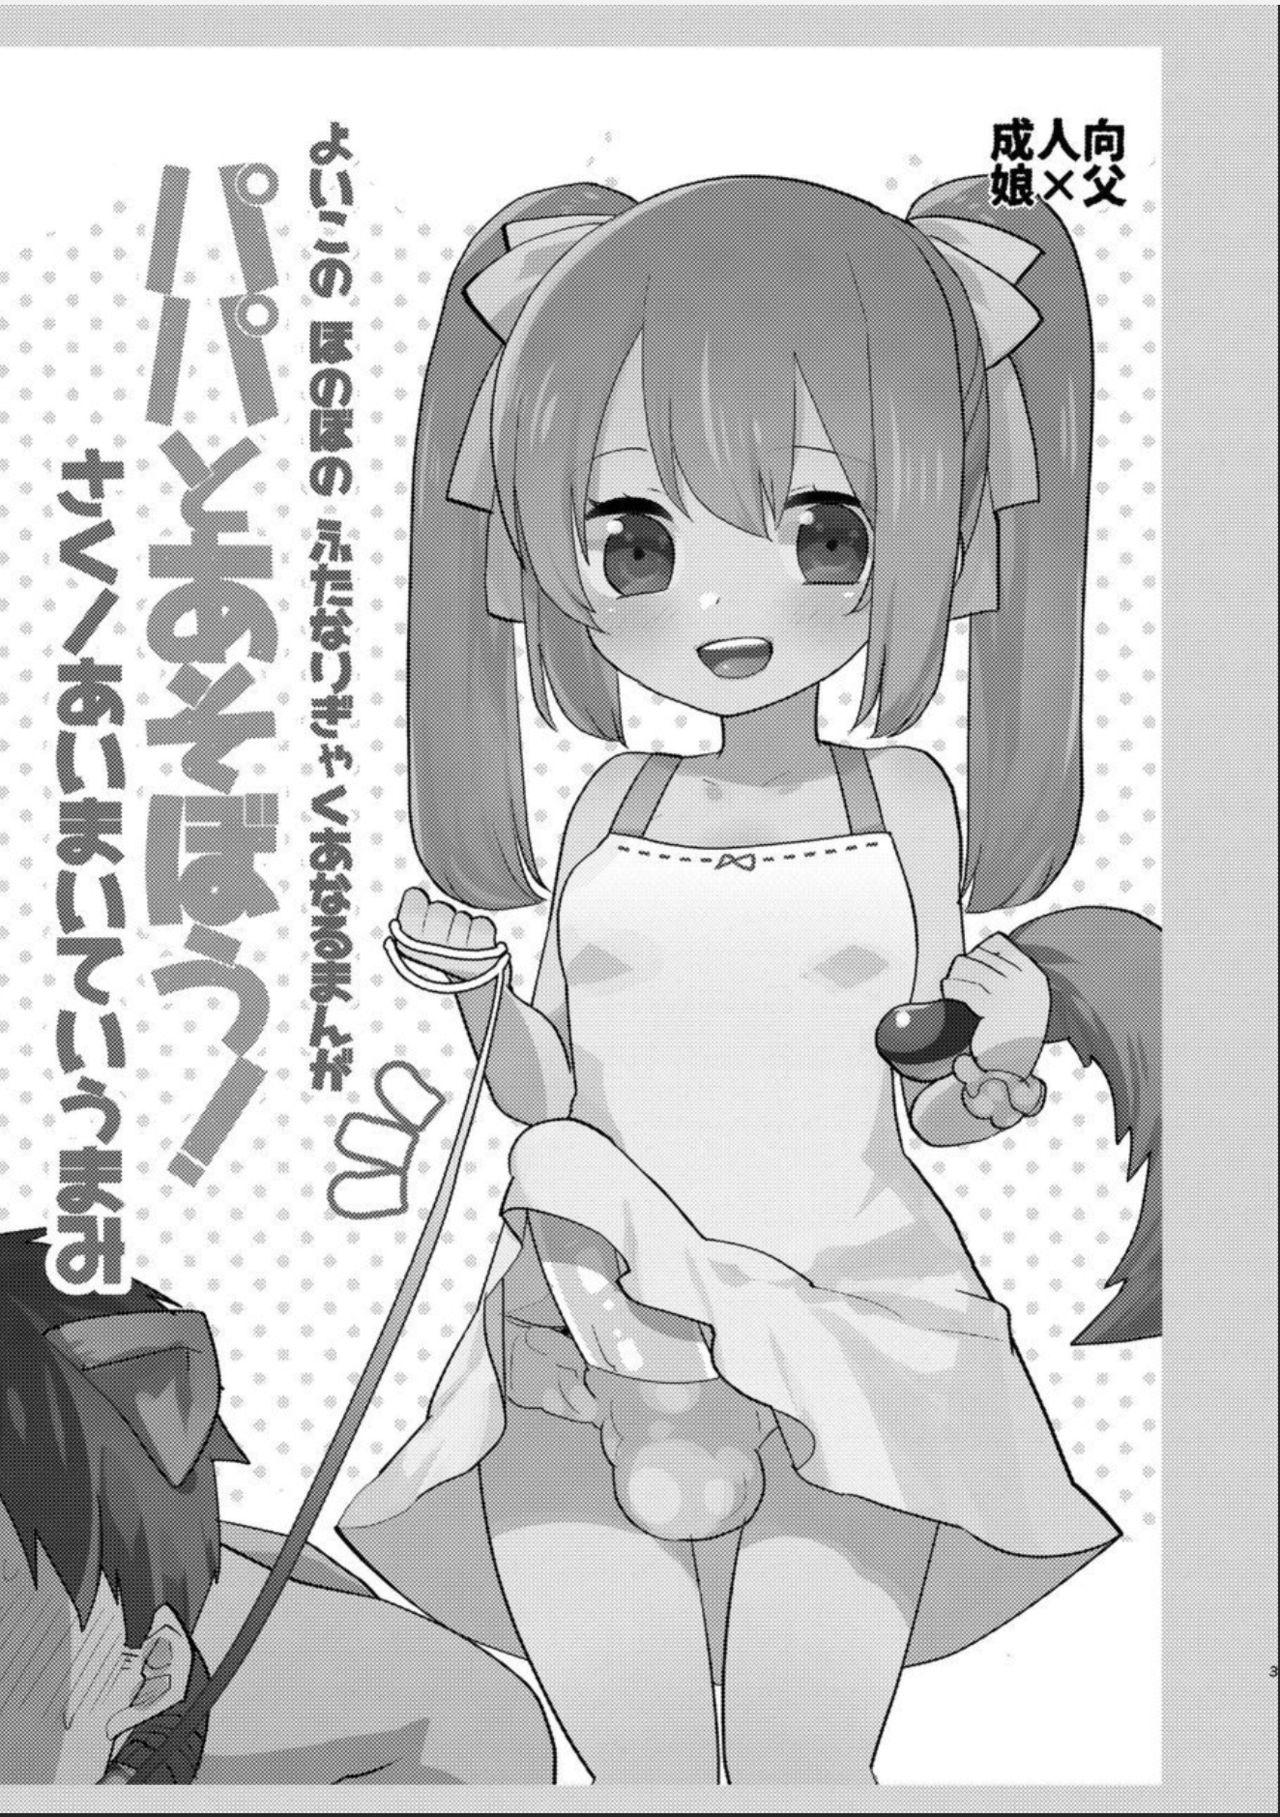 Yoiko no Futanari Gyaku Anal Manga "Papa to Asobou!" | Futanari Anal Manga for Good Children: "Play with Daddy!" 1